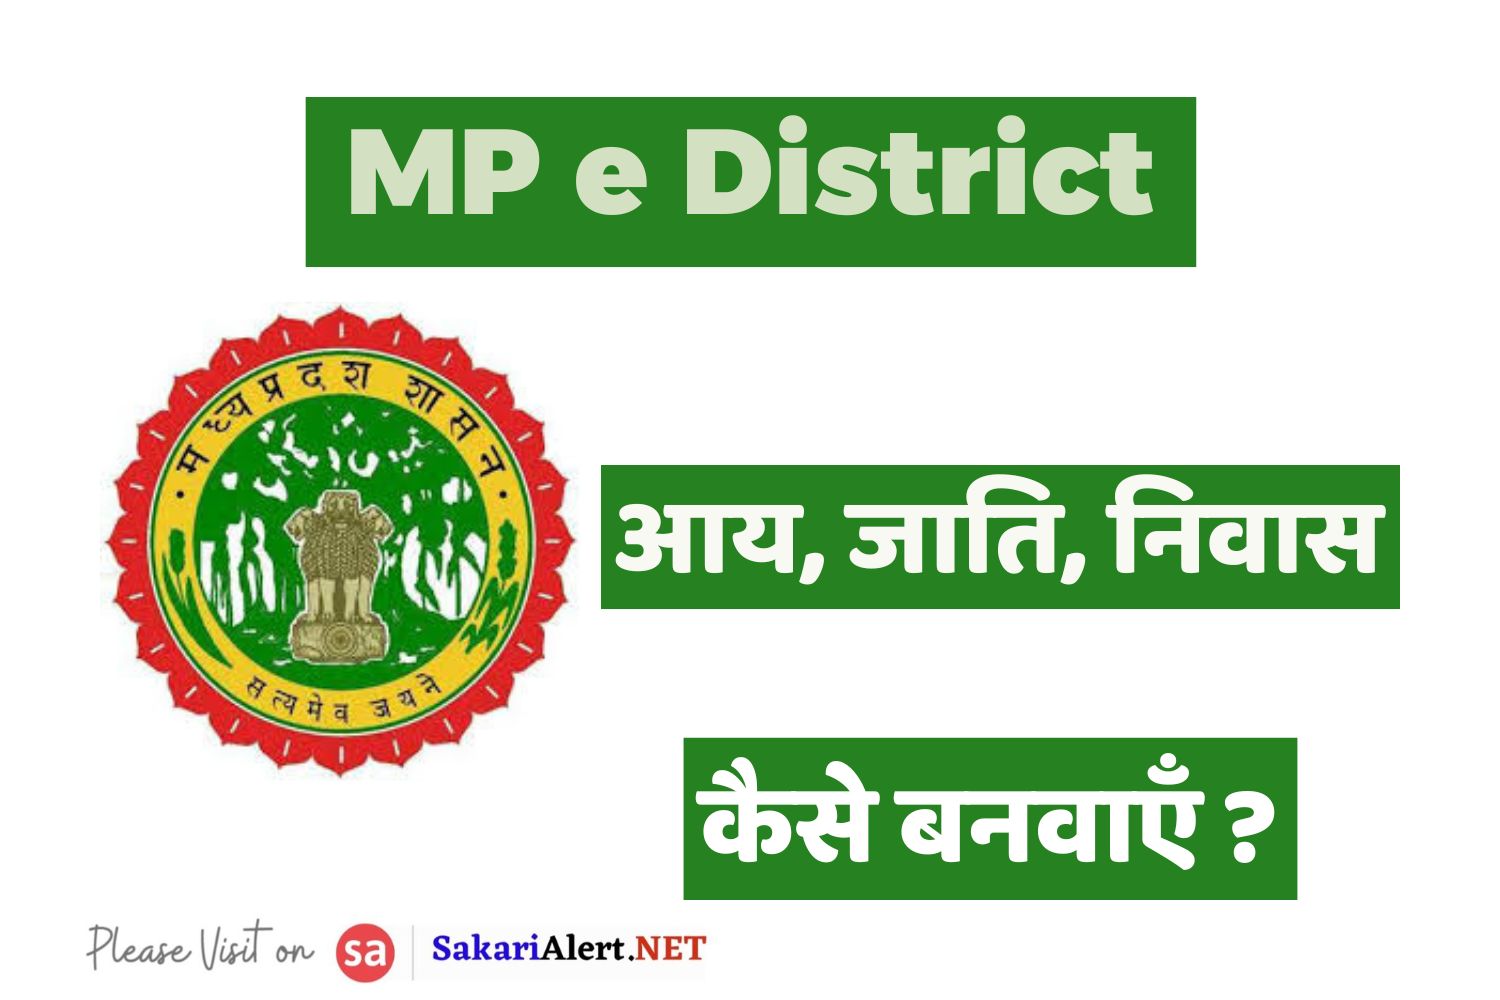 MP e District